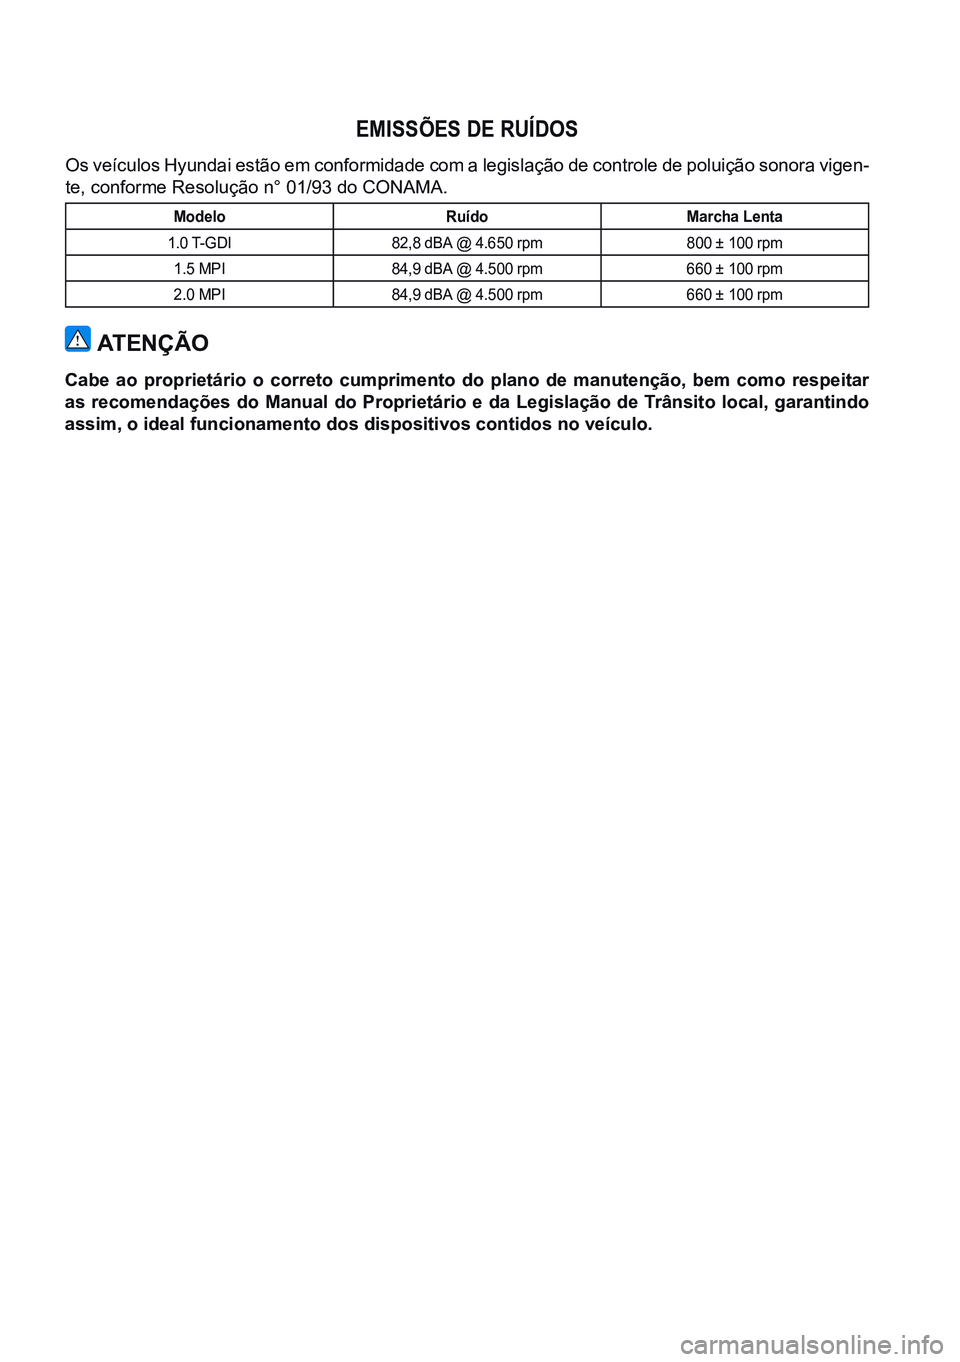 HYUNDAI CRETA 2021  Manual de utilização (in Portuguese) EMISSÕES DE RUÍDOS 
Os veículos Hyundai estão em conformidade com a legislação de controle de poluição sonora vigen-
te, conforme Resolução n° 01/93 do CONAMA.
Modelo RuídoMarcha Lenta
1.0